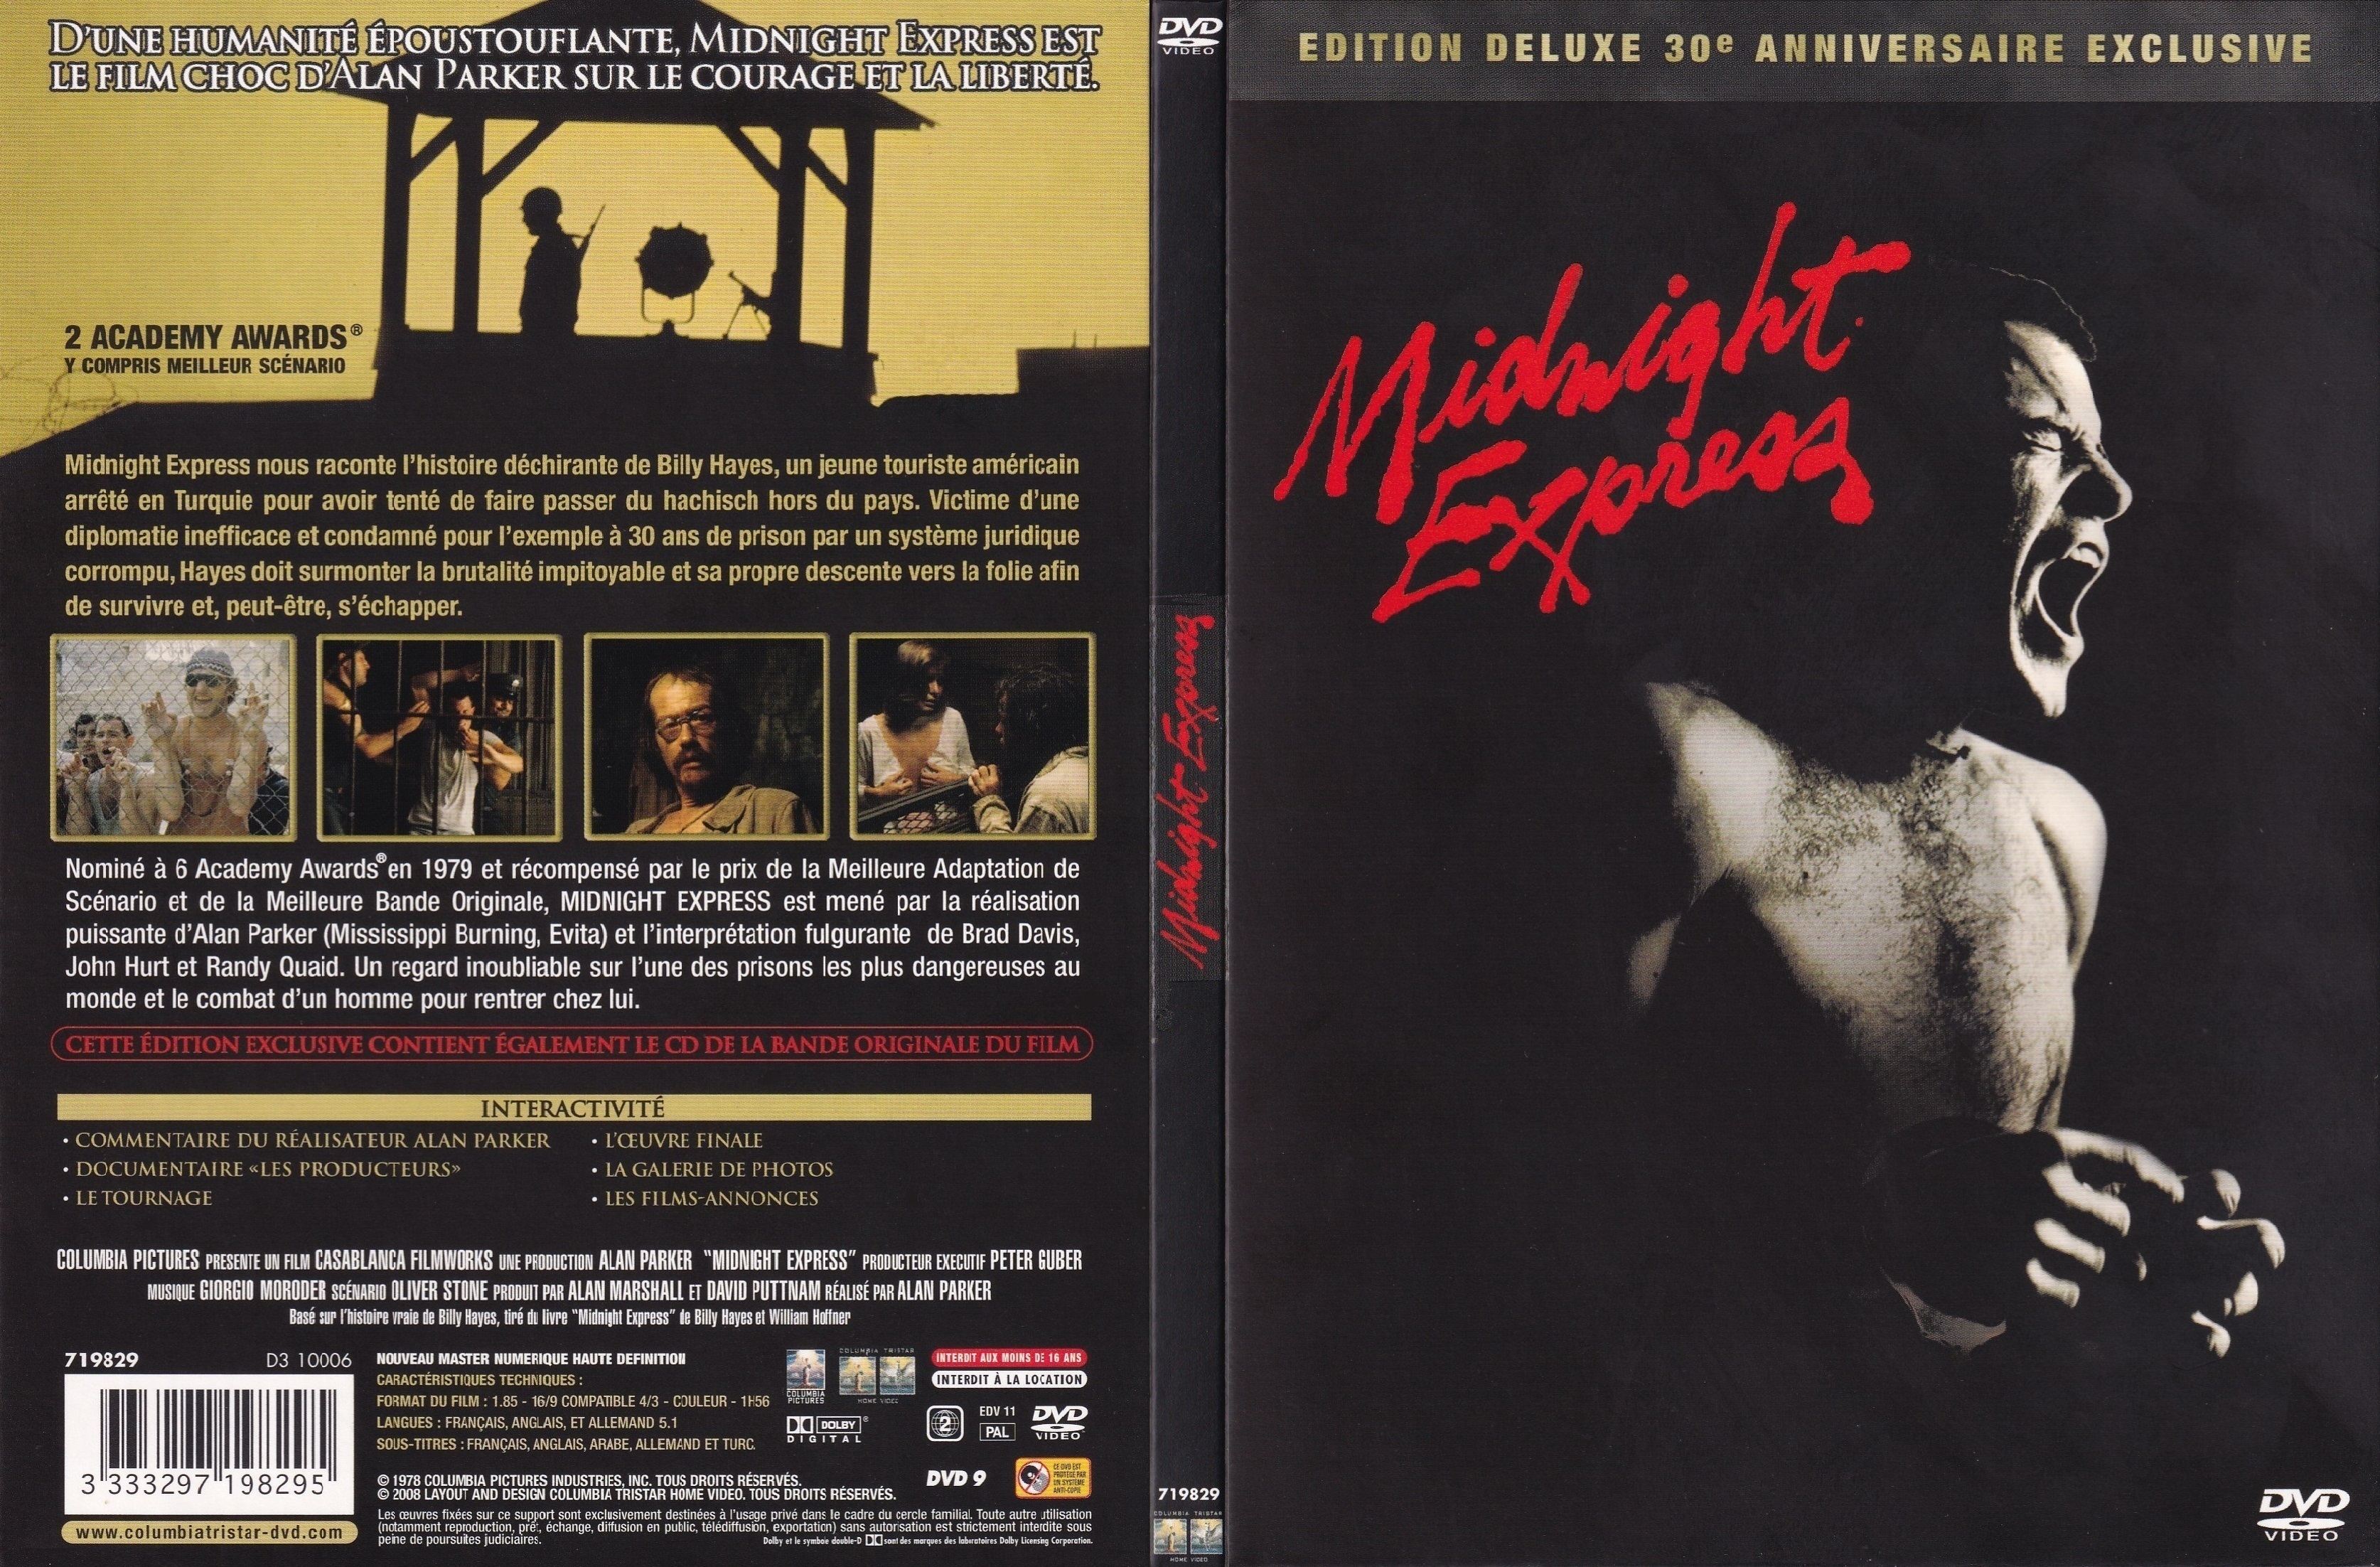 Jaquette DVD Midnight Express - 30e Anniversaire